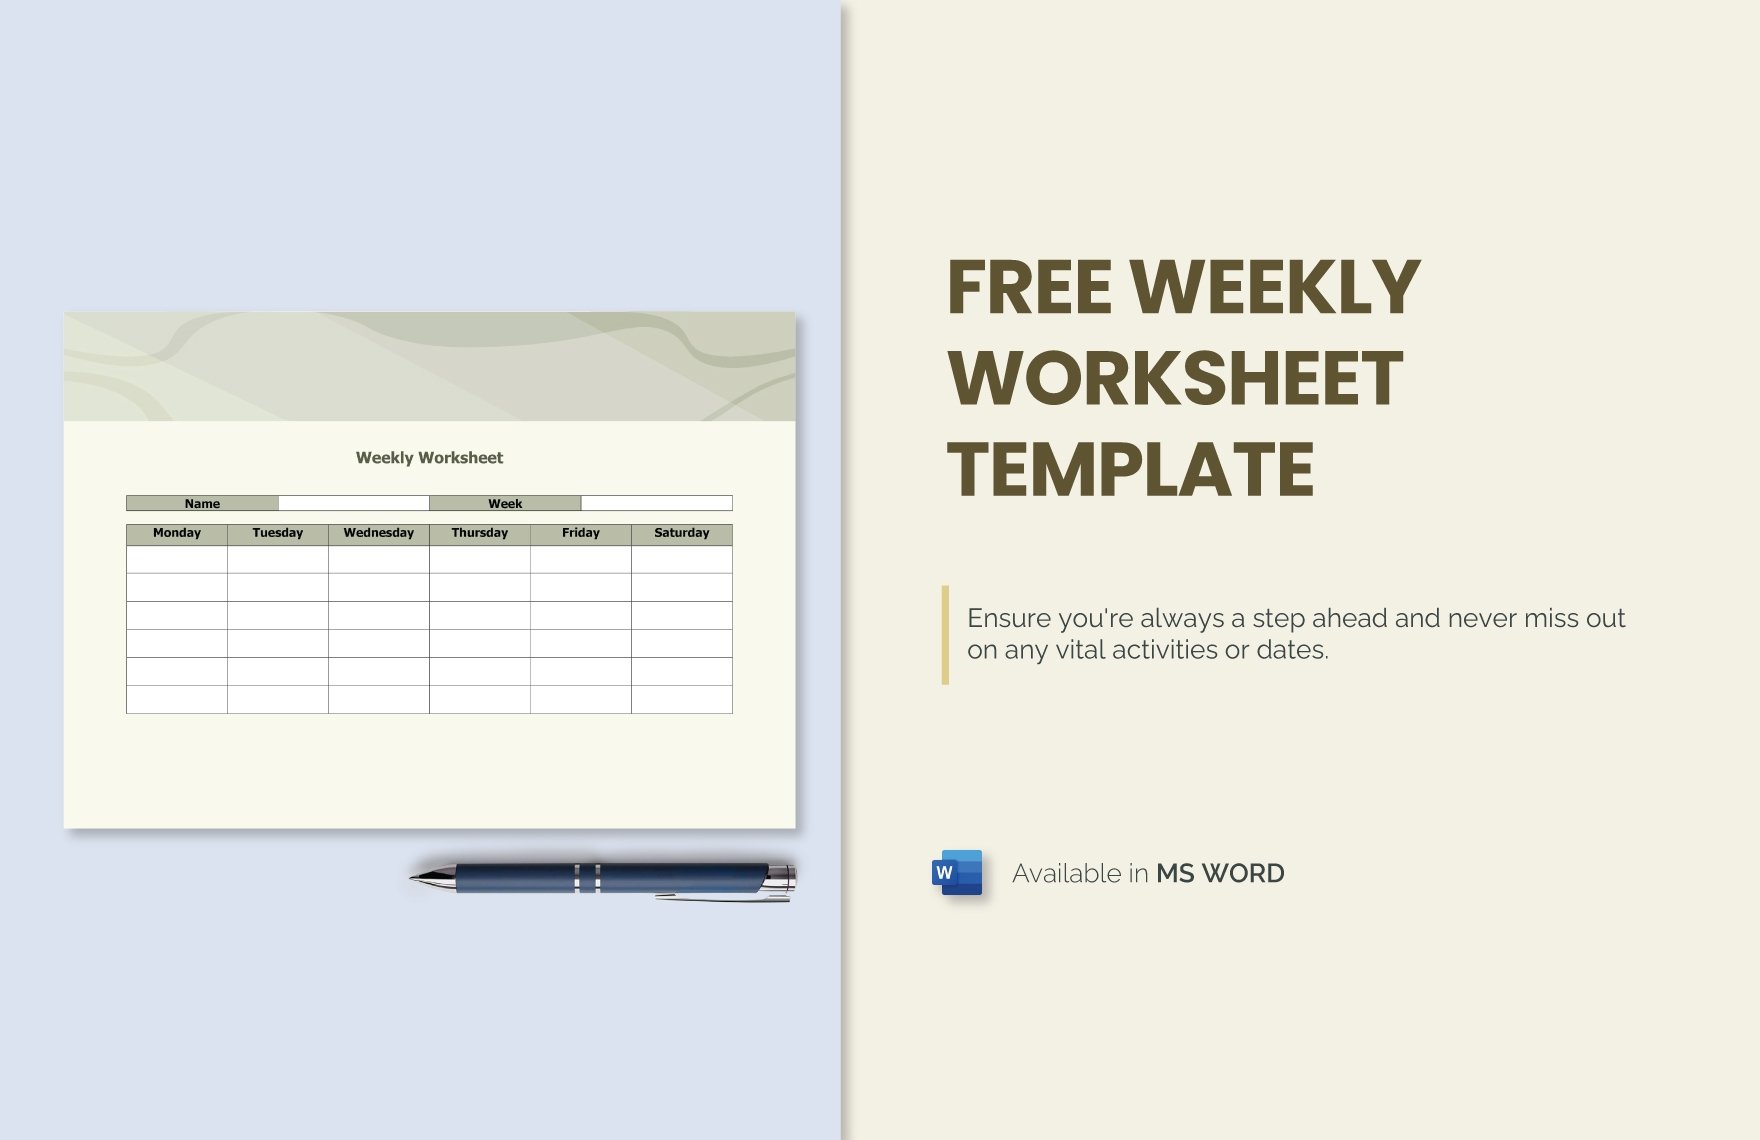 Free Weekly Worksheet Template in Word